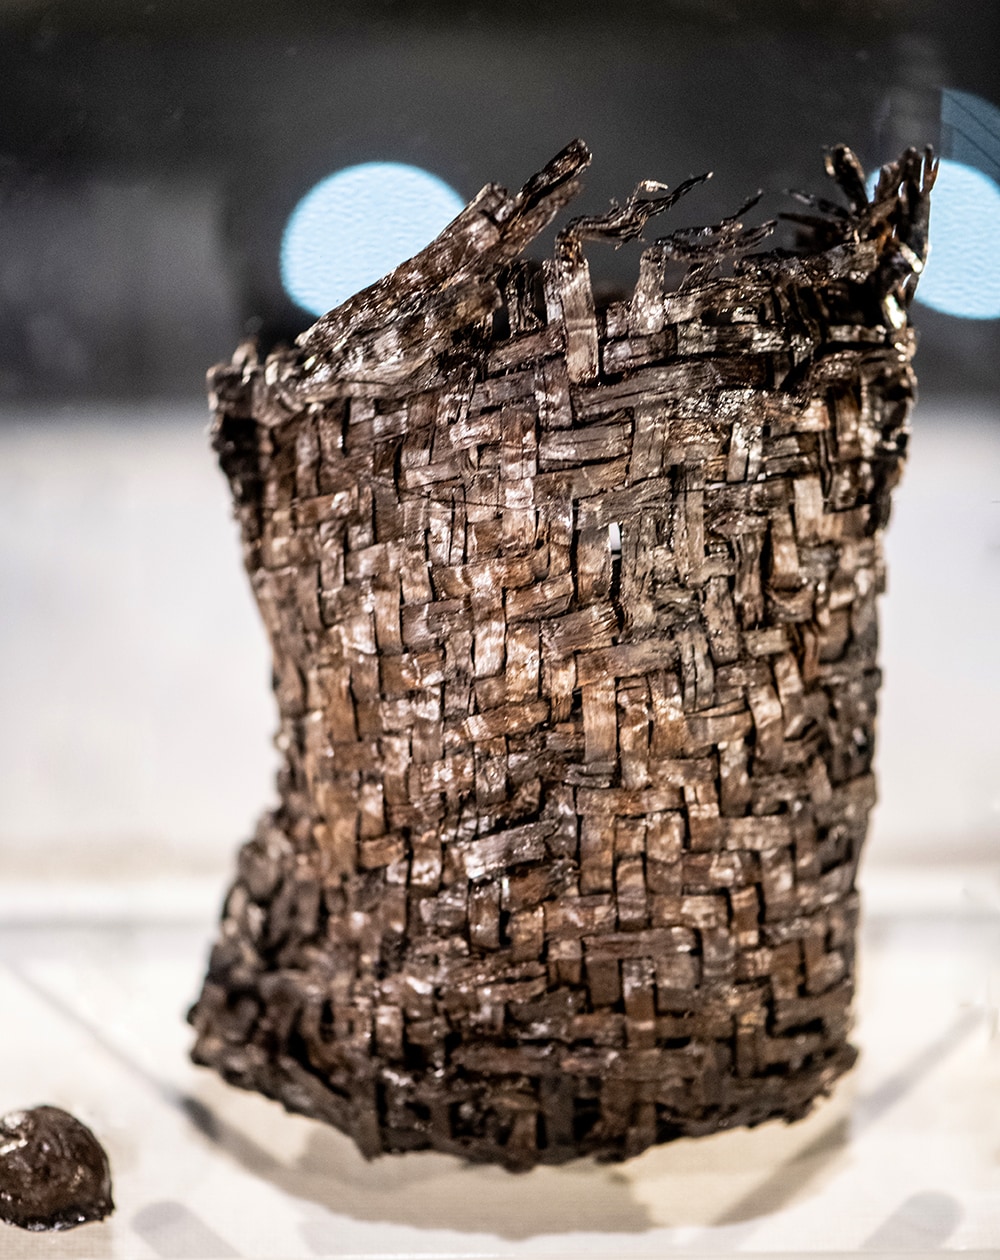 「縄文ポシェット」と呼ばれる木製編籠と中に入っていたクルミの殻。これを腰にさげて森を歩いていたかもと想像するだけで心躍る。現代にも受け継がれている波形網代編みで、素材はヒノキ科の樹皮。